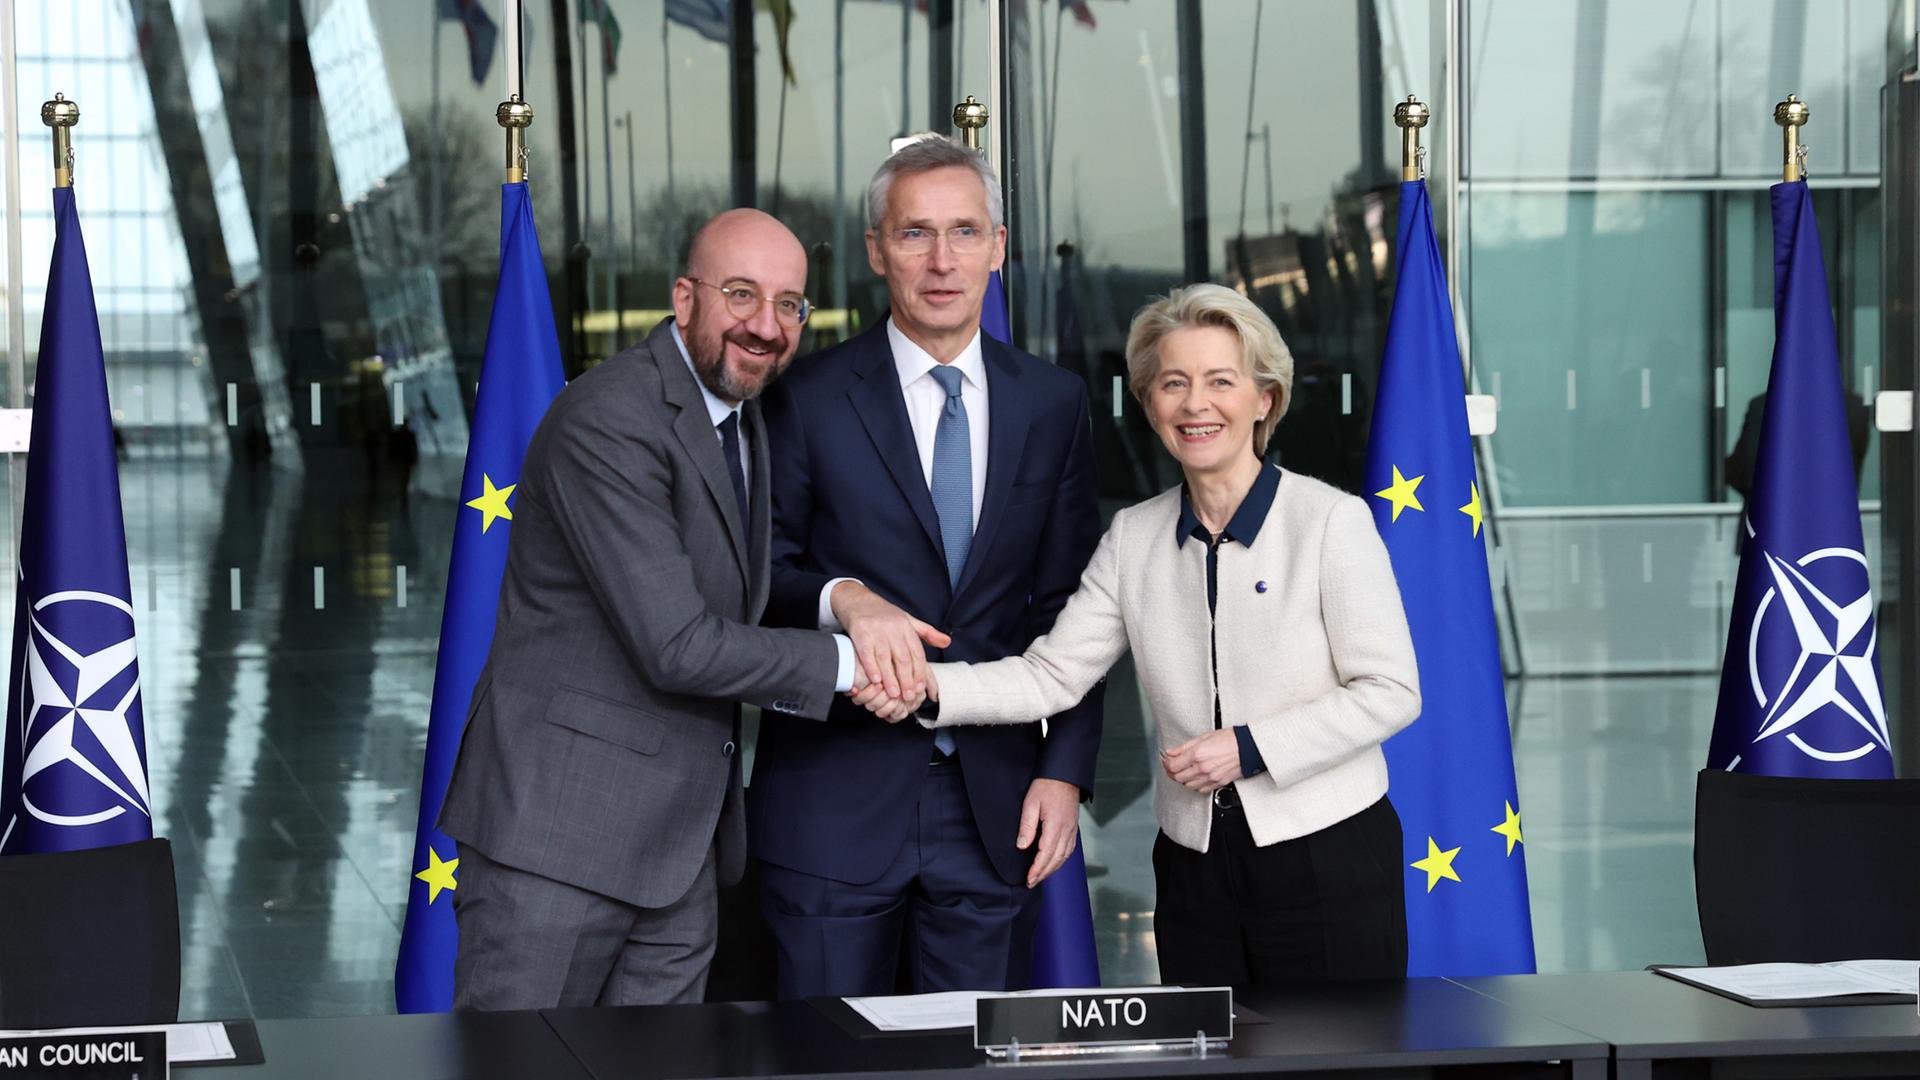 NATO-Generalsekretär Jens Stoltenberg, EU-Kommissionspräsidentin Ursula von der Leyen und der Präsident des Europarats, Charles Michel, stehen zusammen nach der Unterzeichnung des Kooperationsabkommens von EU und NATO